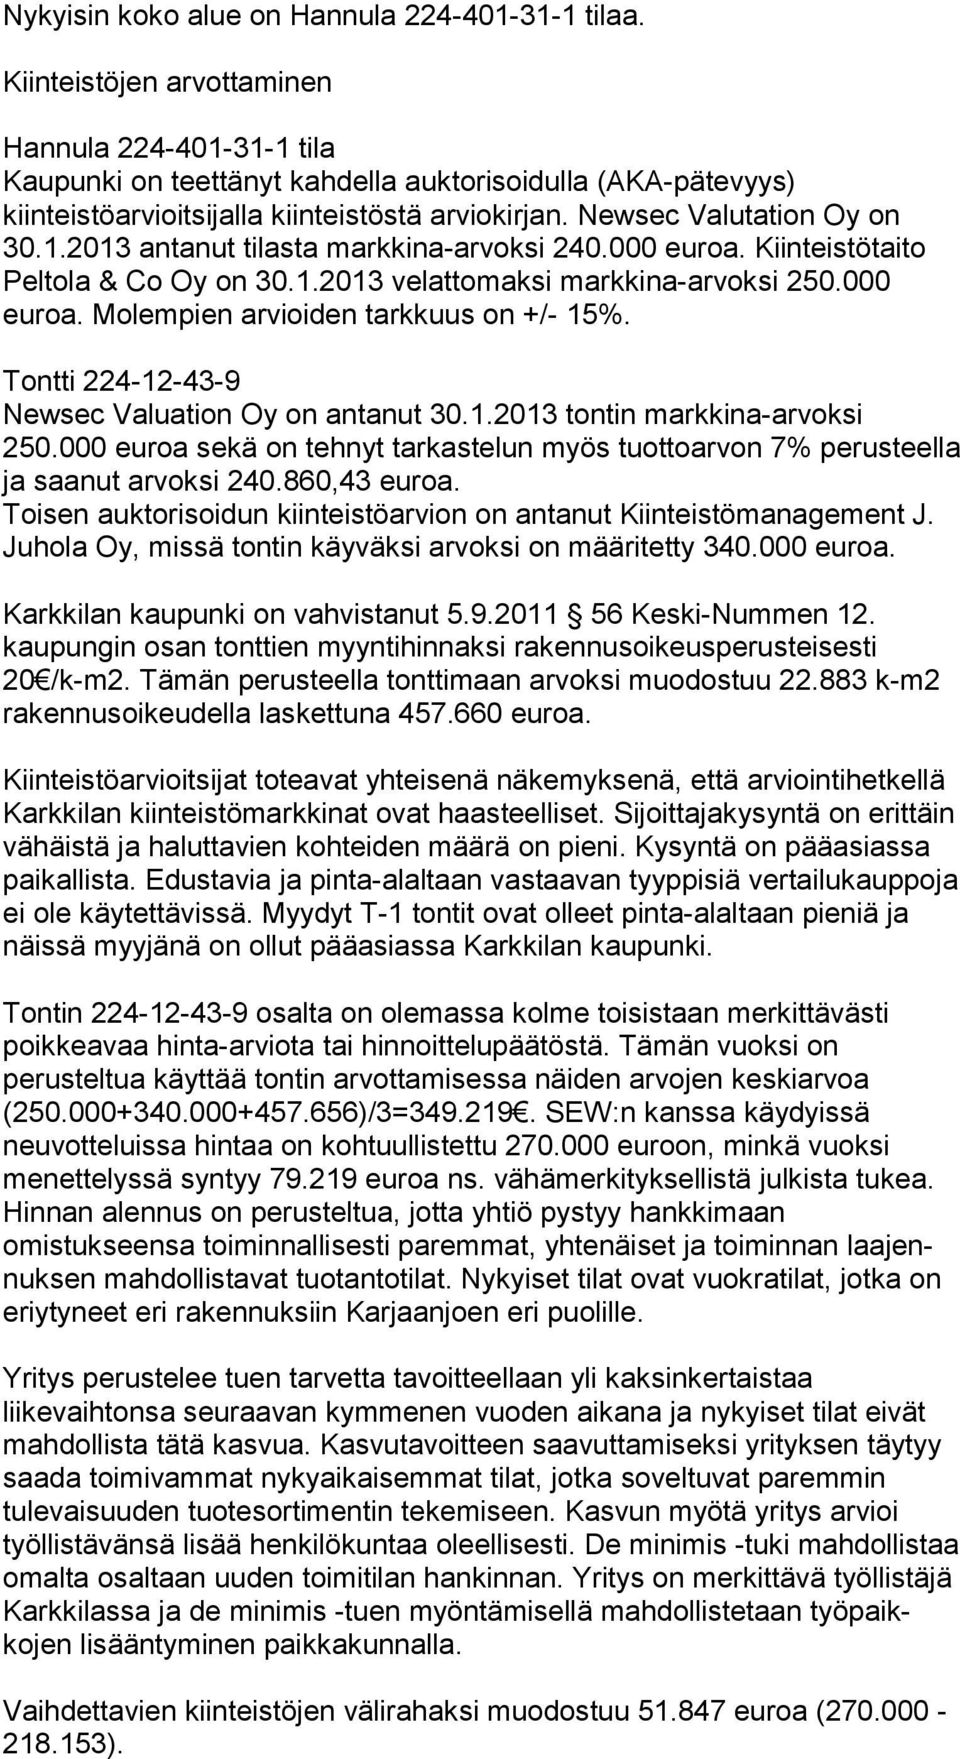 000 eu roa. Kiin teistötaito Peltola & Co Oy on 30.1.2013 ve lattomaksi markki na-arvoksi 250.000 euroa. Molempien arvioiden tarkkuus on +/- 15%. Tontti 224-12-43-9 Newsec Valuation Oy on antanut 30.